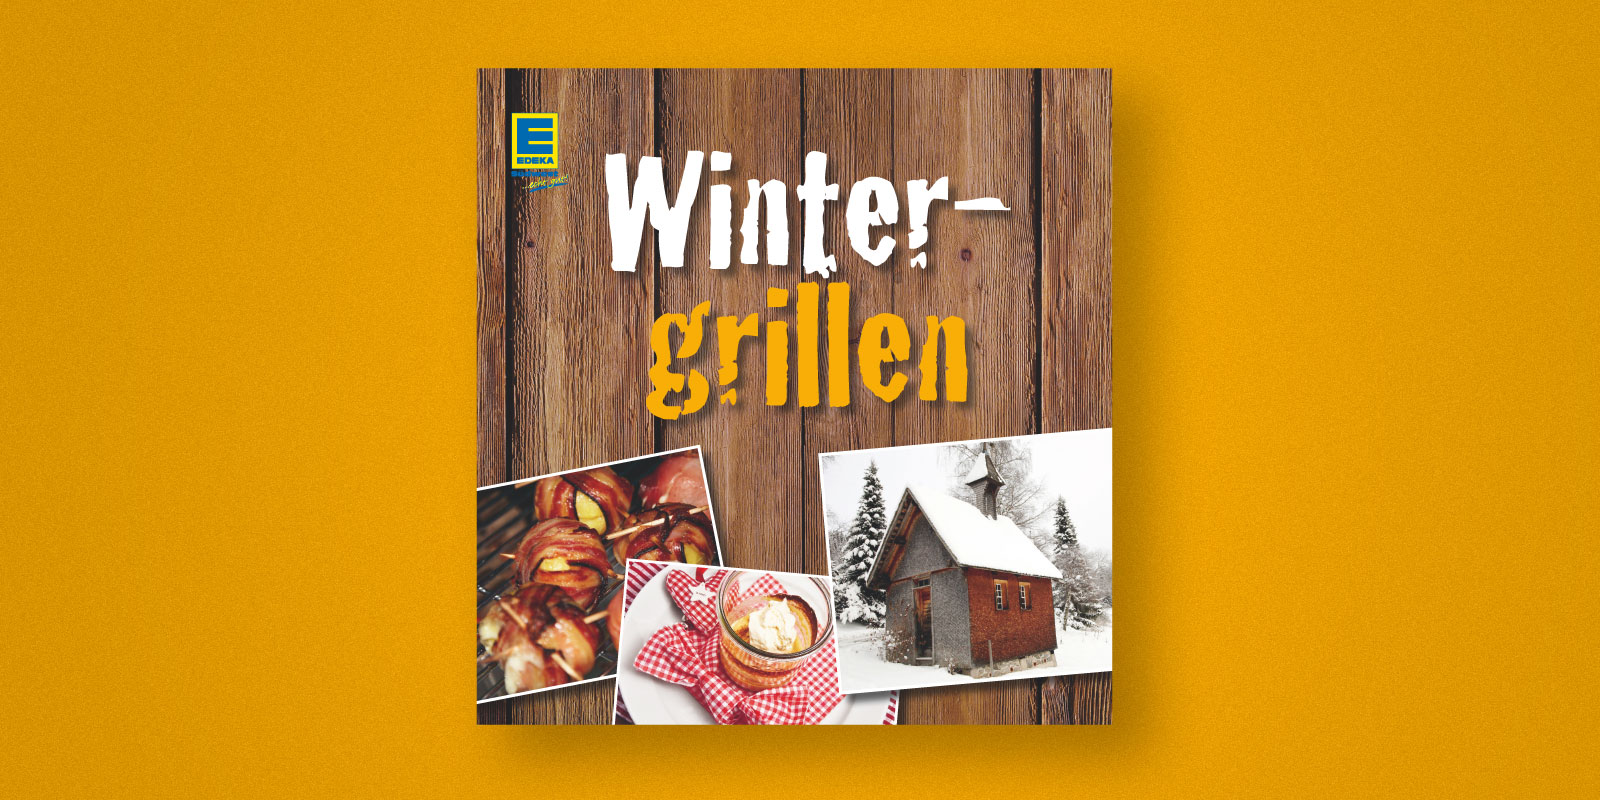 Edeka Südwest – Wintergrillen Broschüre